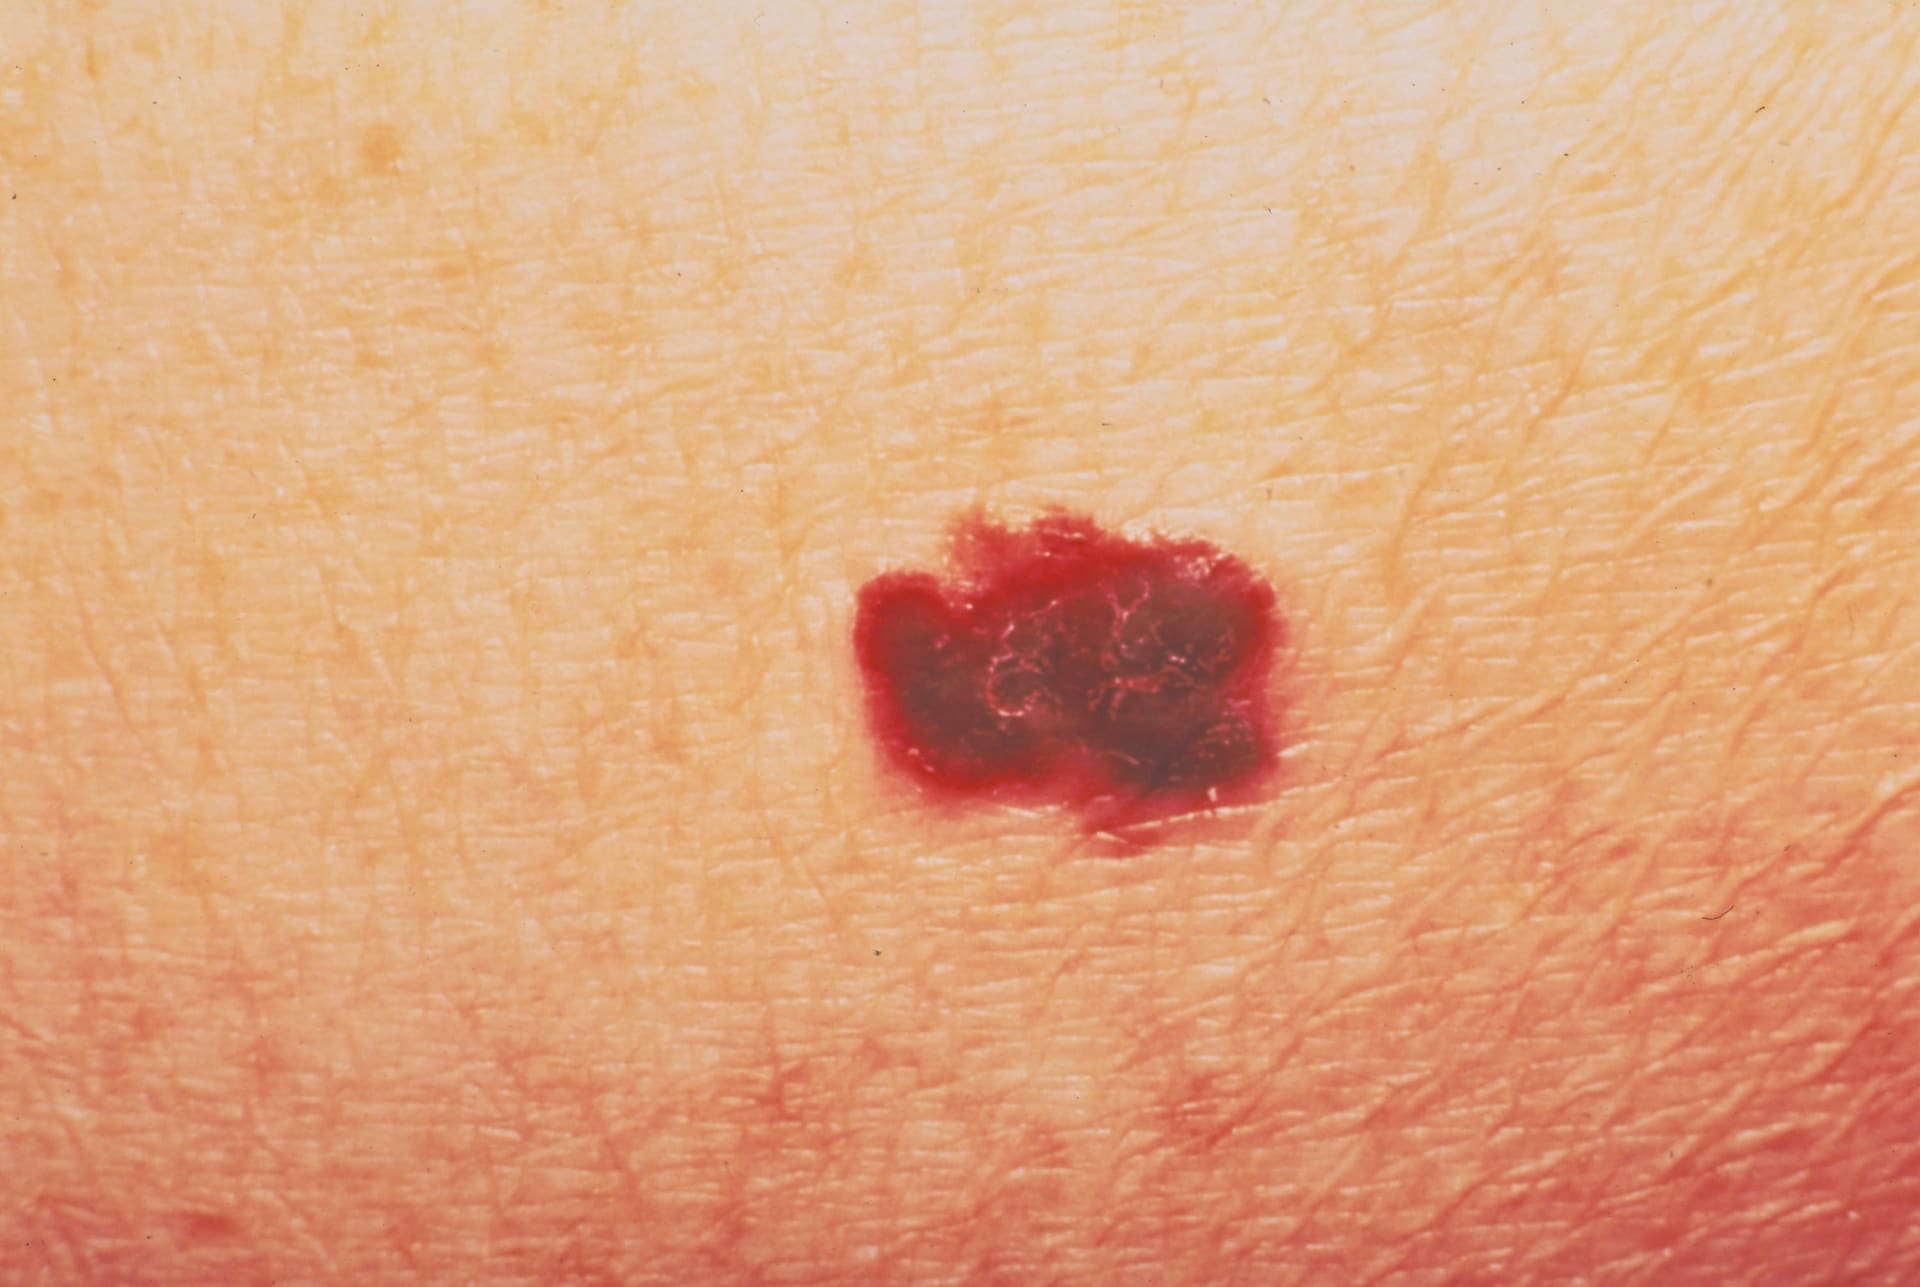 أطباء يحذرون من أن التطبيقات التي تدّعي اختبار الشامات لا تستطيع اكتشاف سرطانات الجلد